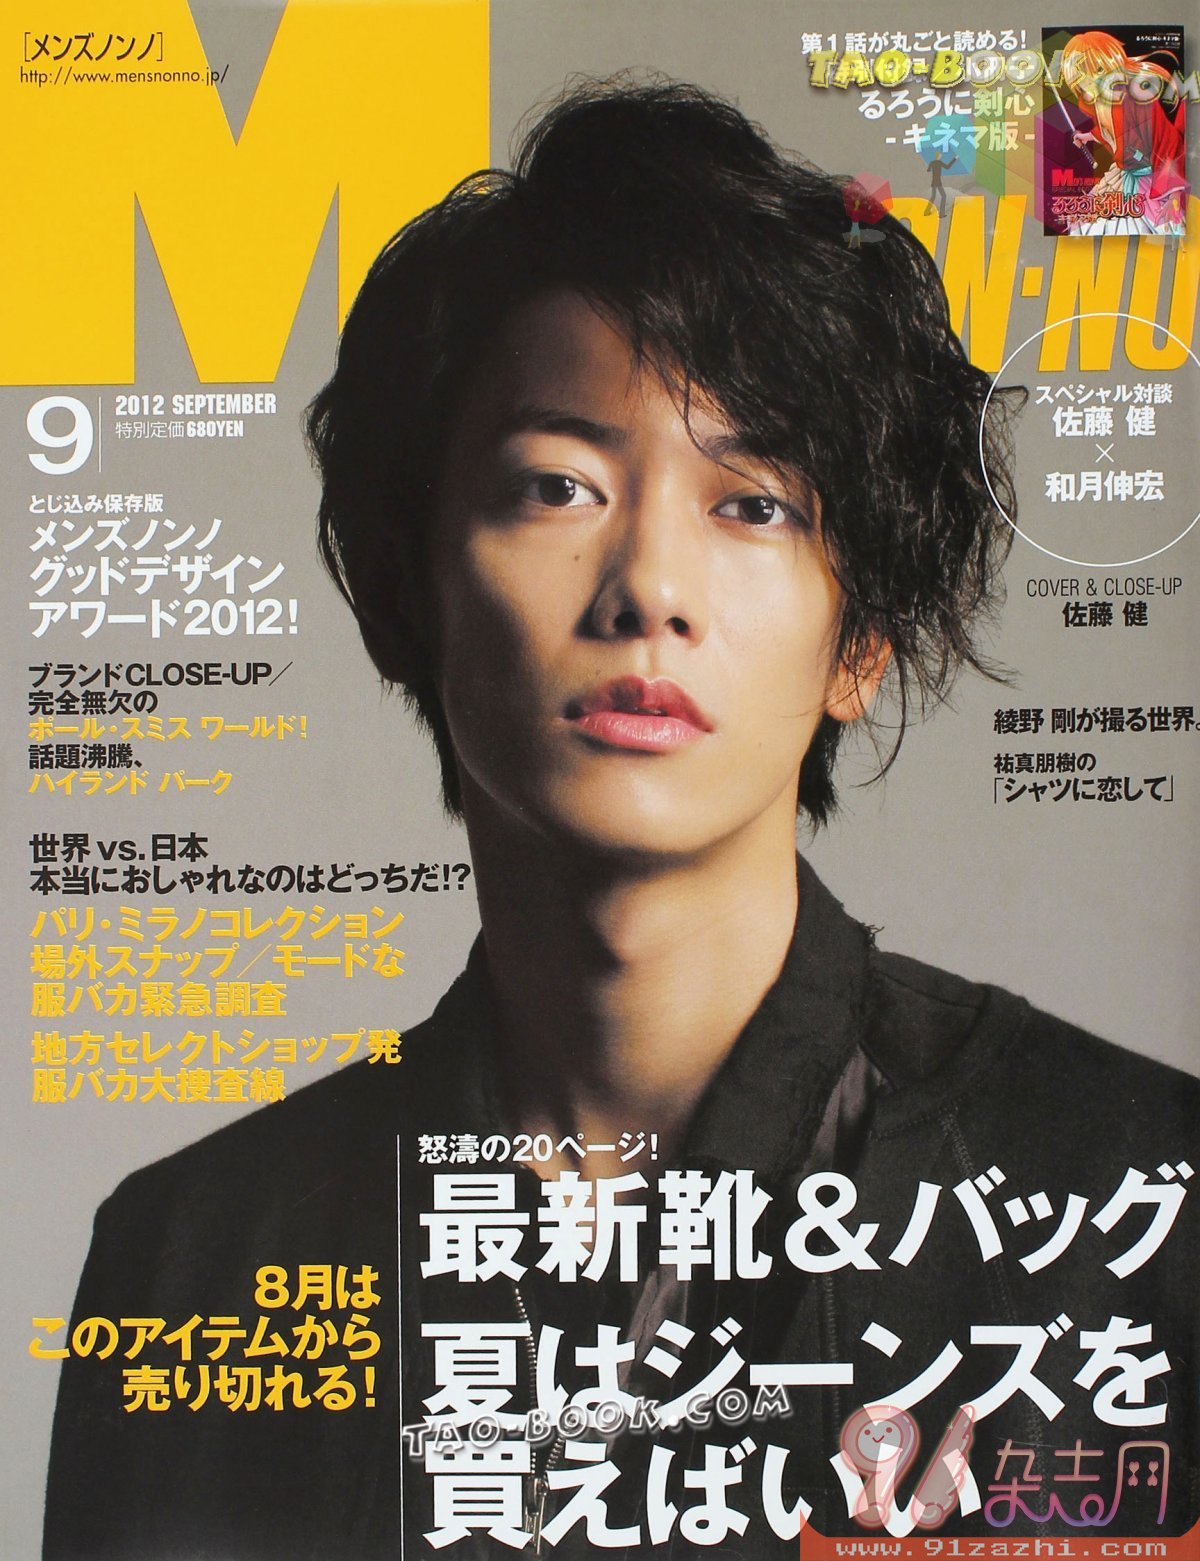 Jmagazine Scans Men S Non No メンズノンノ September 12 Updated